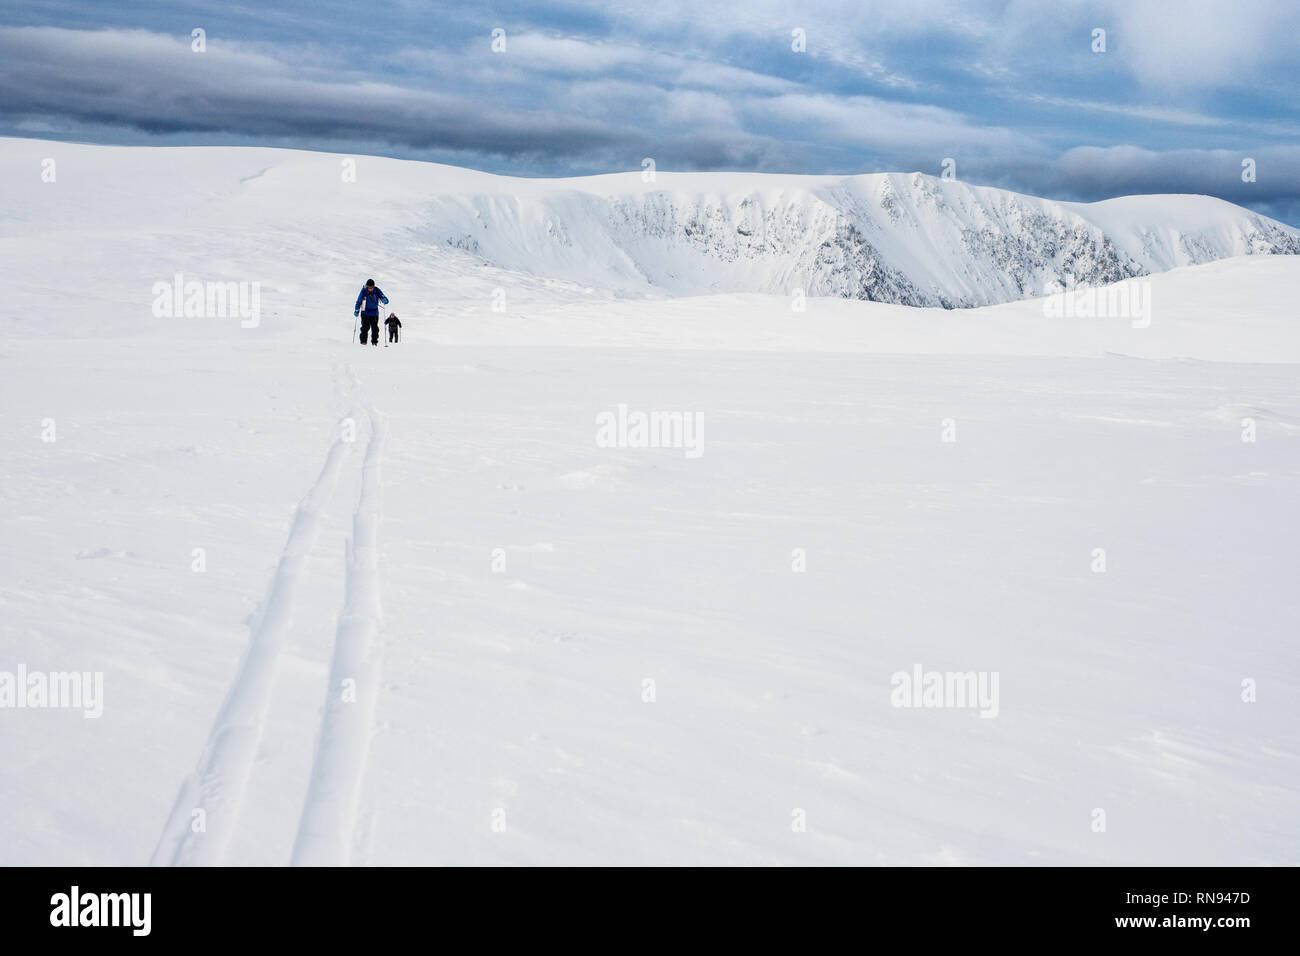 Groupe d'alpinistes de ski le ski de randonnée sur le plateau Feshie dans les montagnes de Cairngorm, Ecosse, Royaume-Uni Banque D'Images